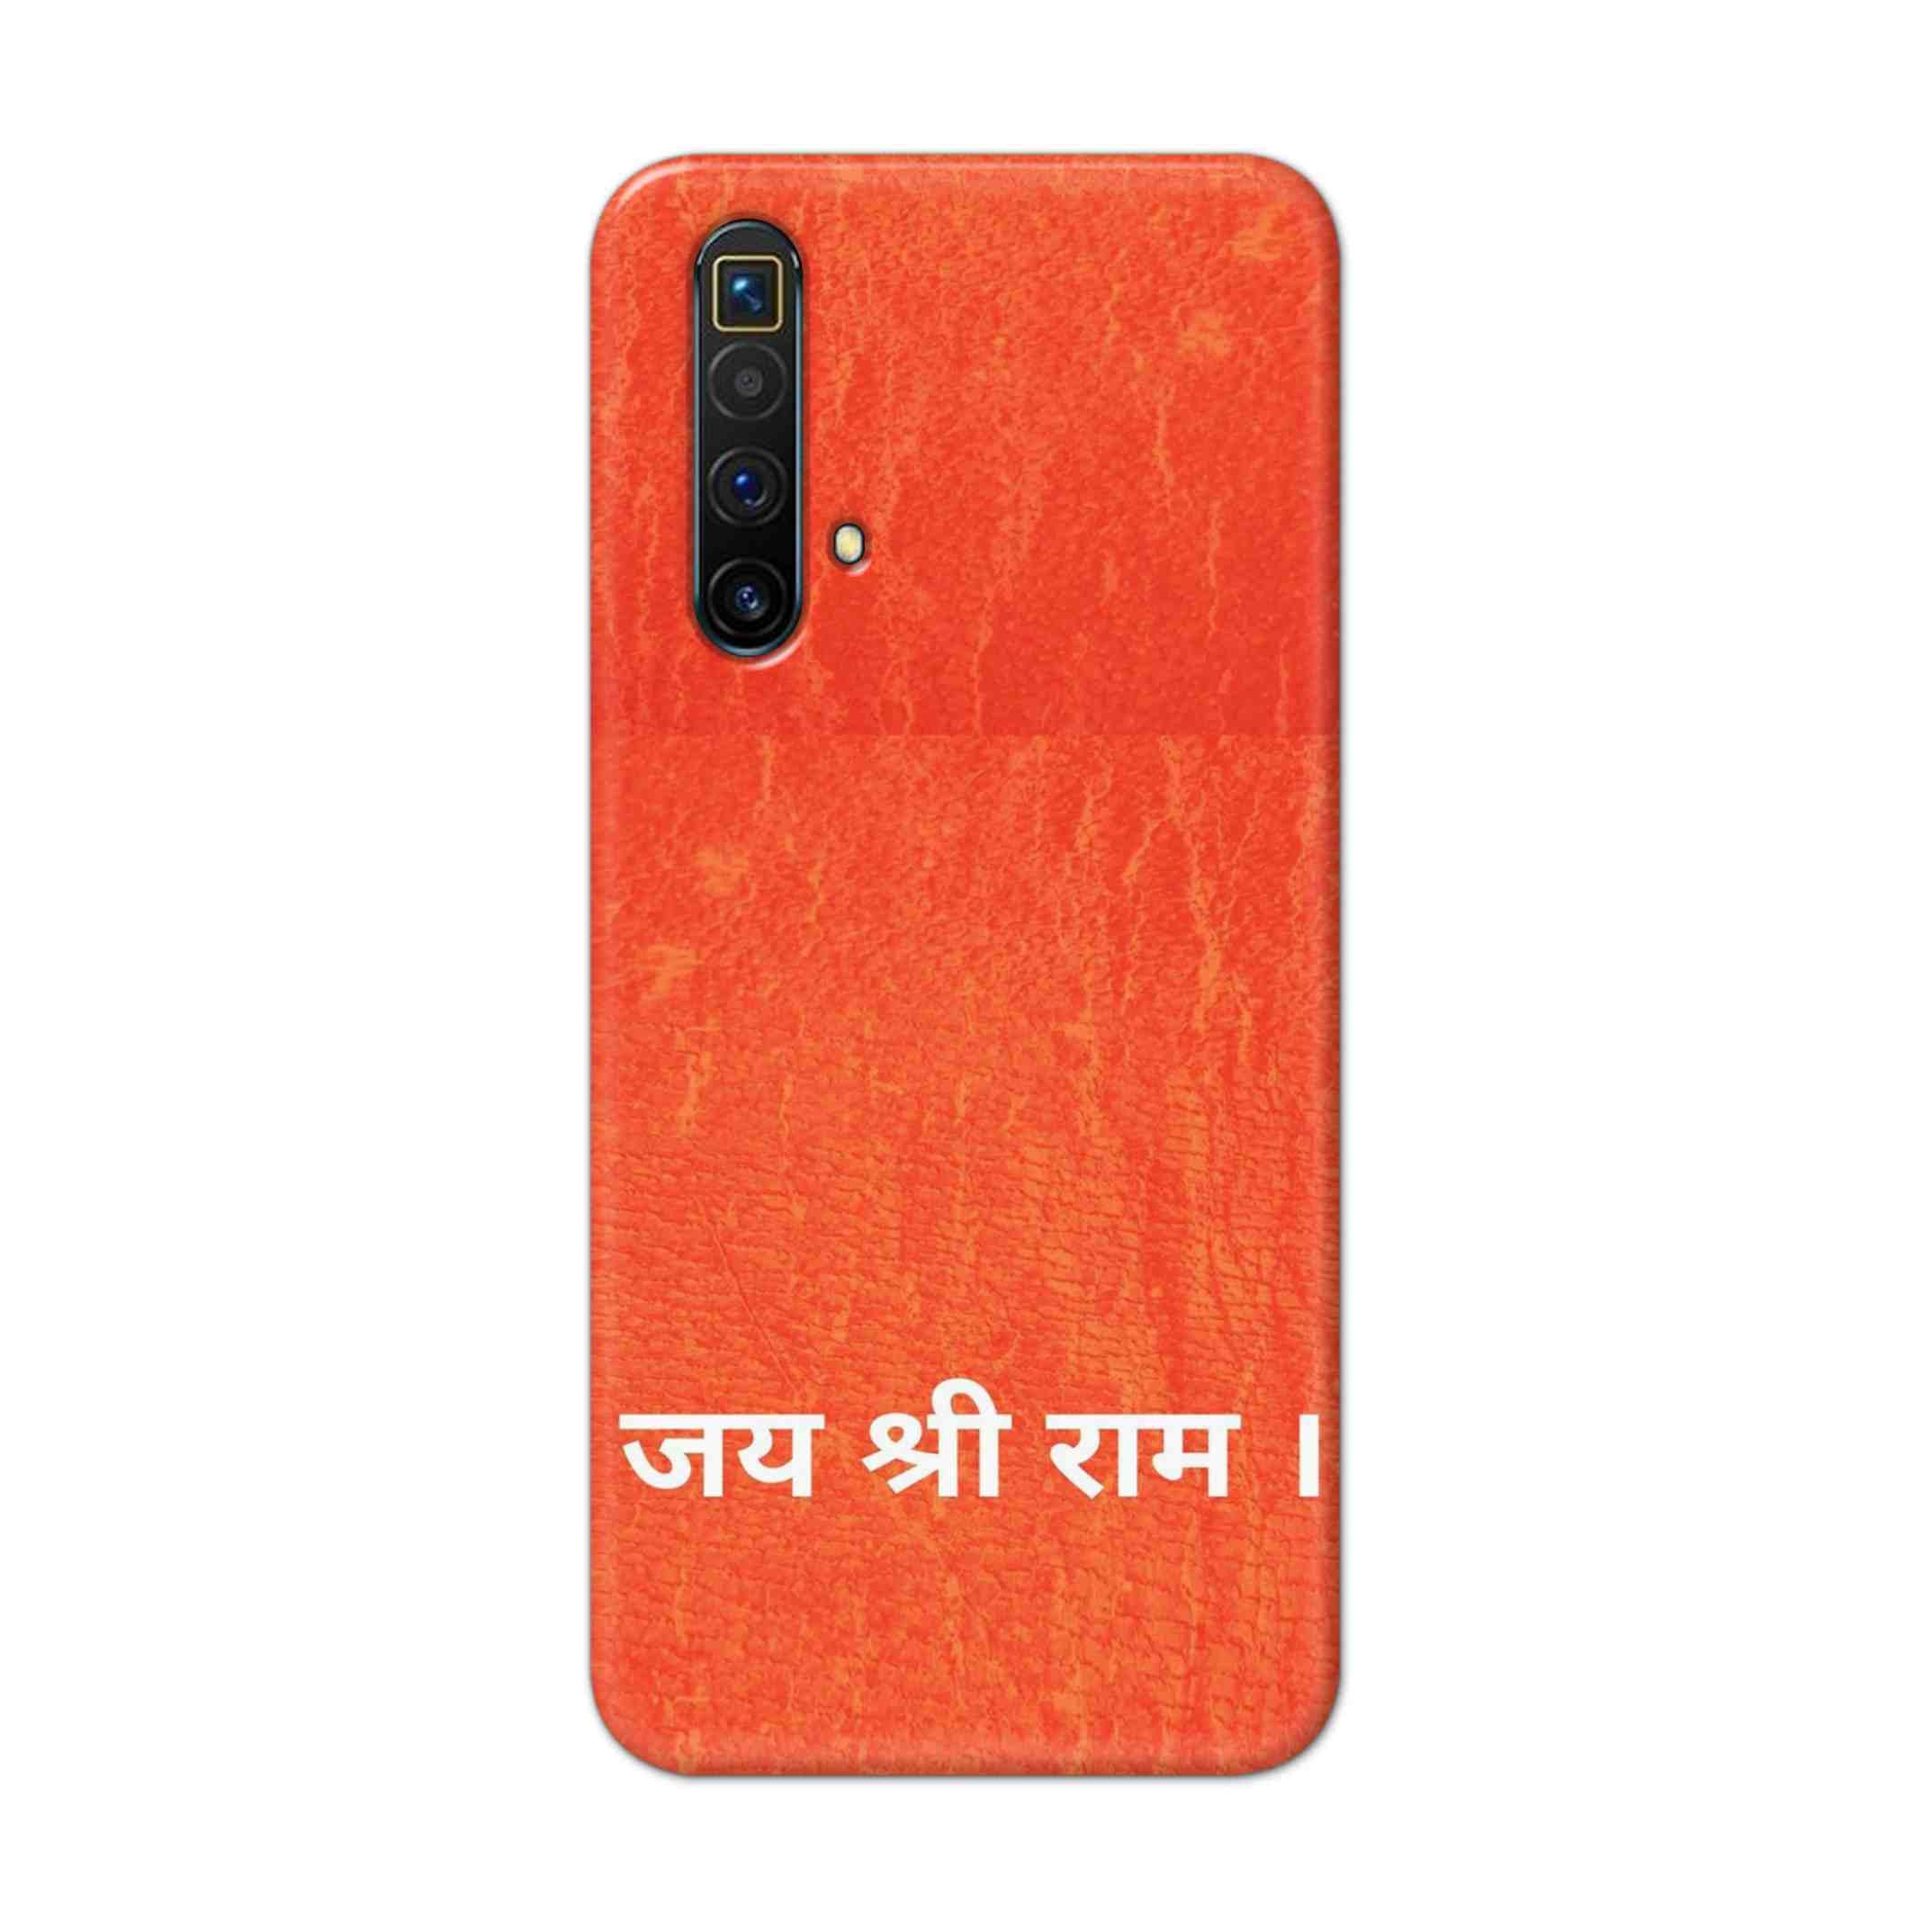 Buy Jai Shree Ram Hard Back Mobile Phone Case Cover For Oppo Realme X3 Online